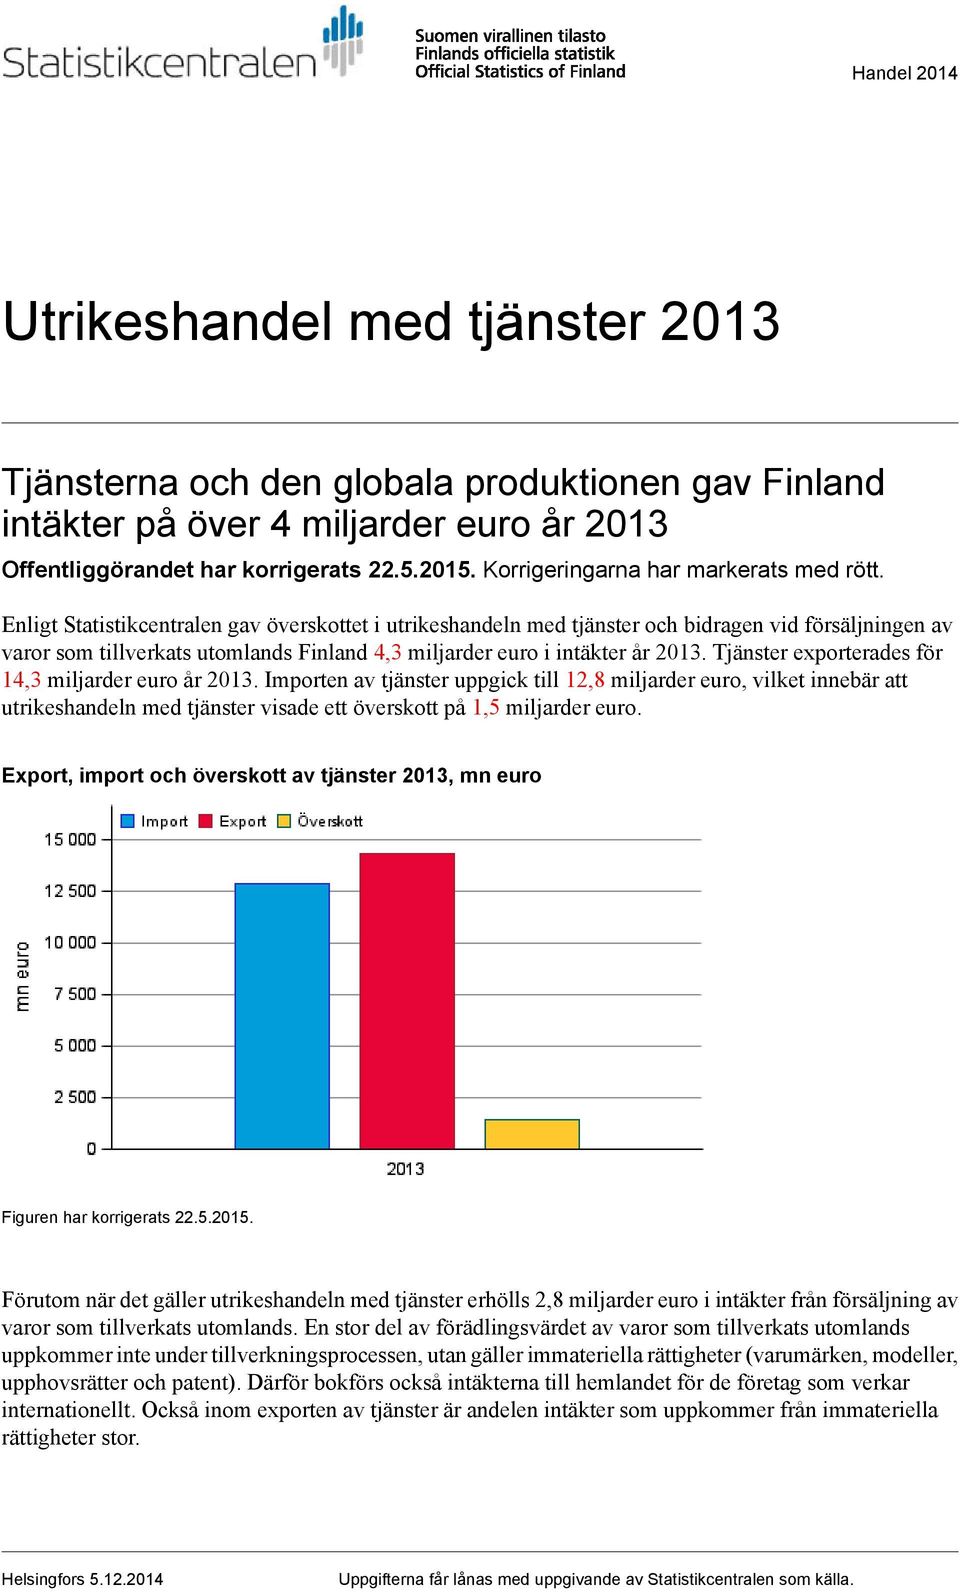 Enligt Statistikcentralen gav överskottet i utrikeshandeln med tjänster och bidragen vid försäljningen av varor som tillverkats utomlands Finland 4,3 miljarder euro i intäkter år.